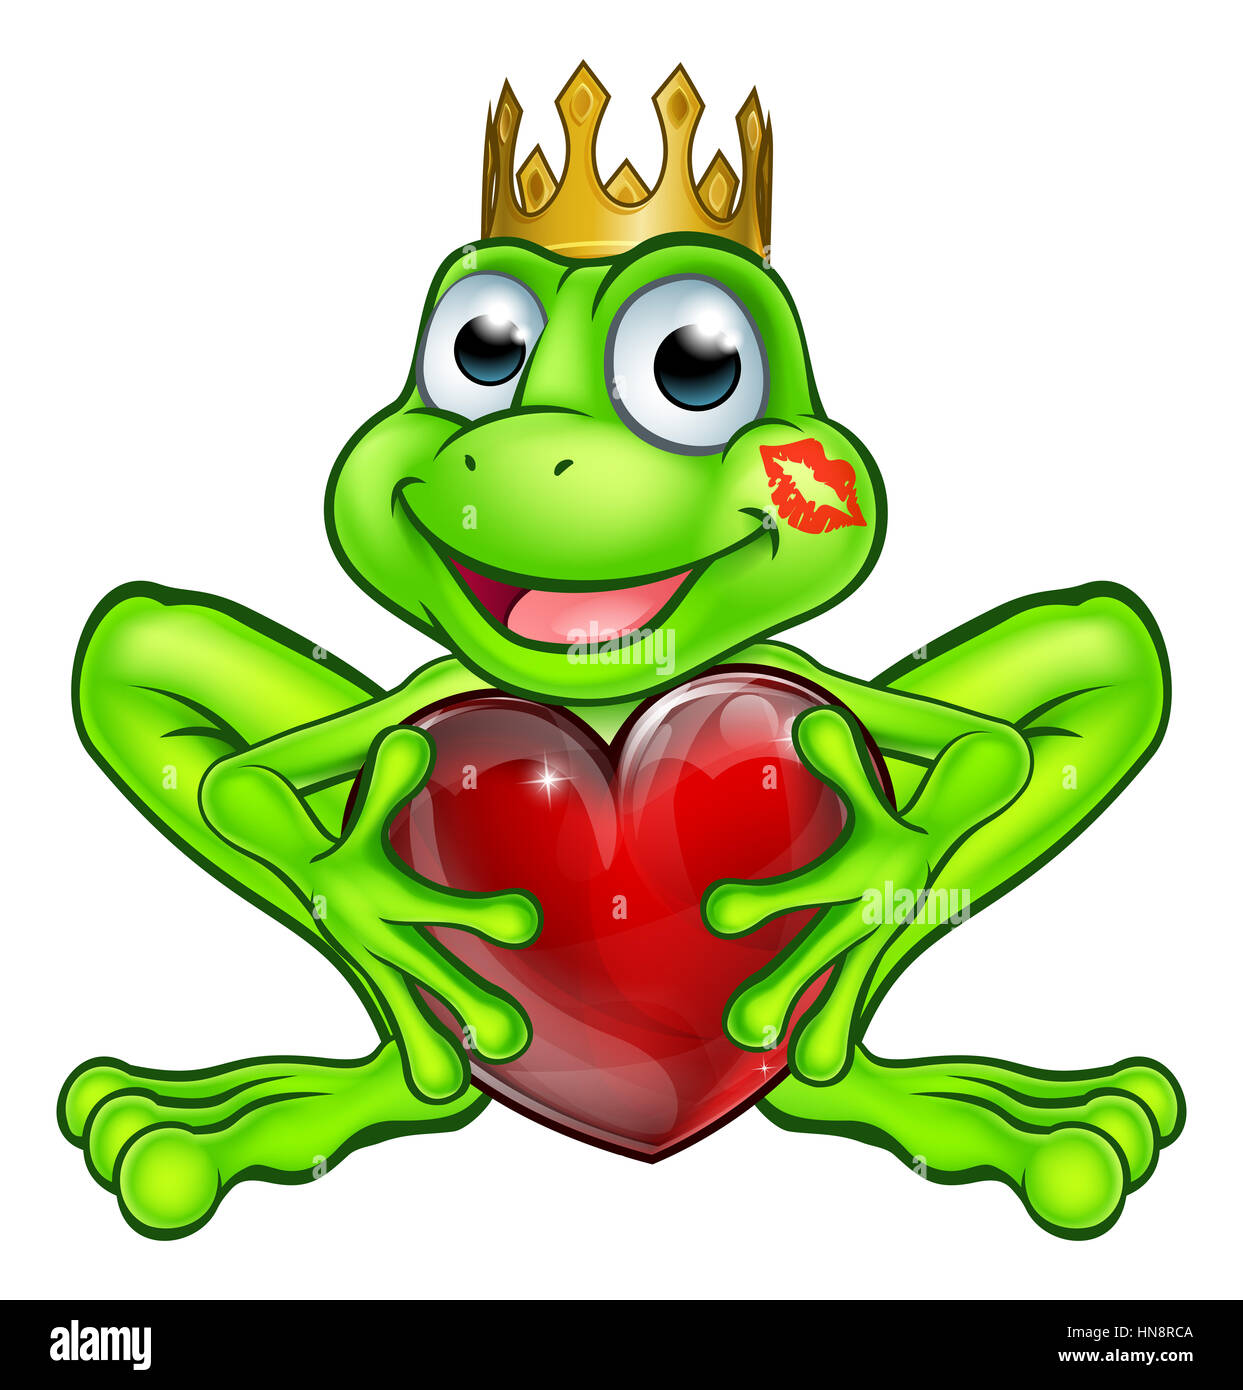 Cartoon Frosch Prinz Märchen Maskottchen Charakter Weringa goldene Krone  und hält die Form eines Herzens mit einem Lippenstift küssen Mark auf  seinem Gesicht Stockfotografie - Alamy